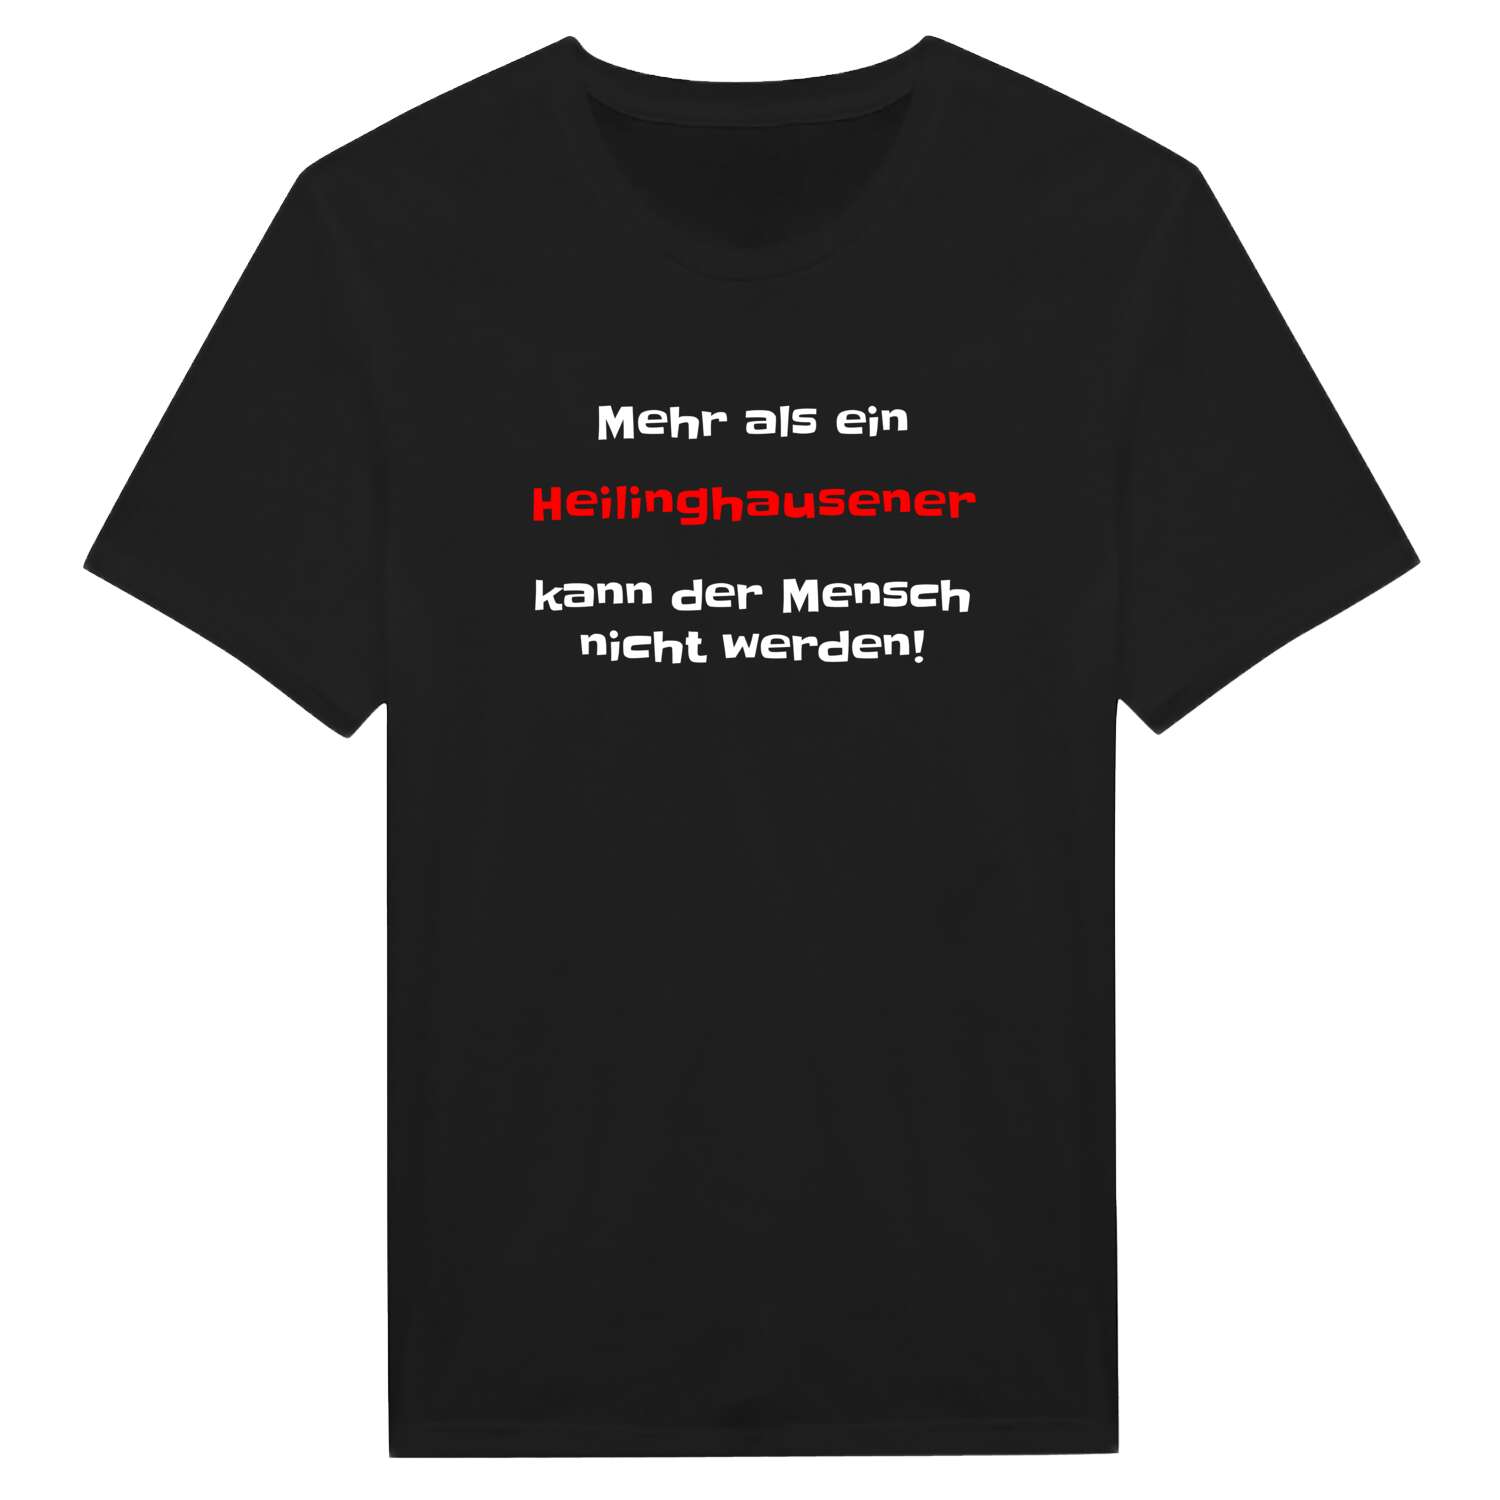 Heilinghausen T-Shirt »Mehr als ein«